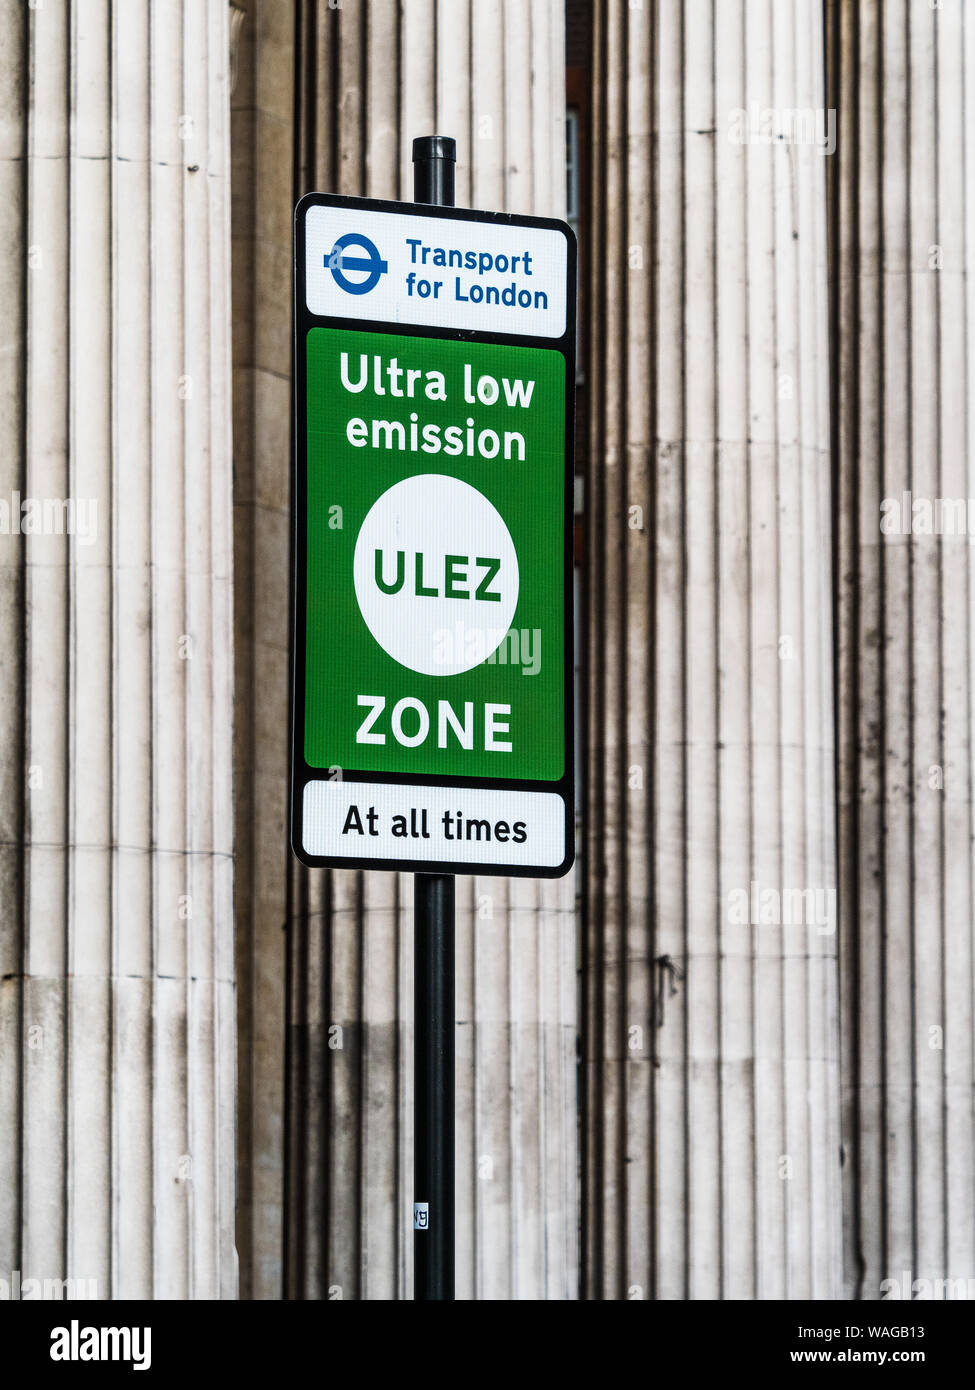 ULEZ Ultra Low Emission Zone anmelden London - Zeichen für die neue Ultra Low Emission Zone im Zentrum von London von Transport for London TFL in 2019 umgesetzt Stockfoto